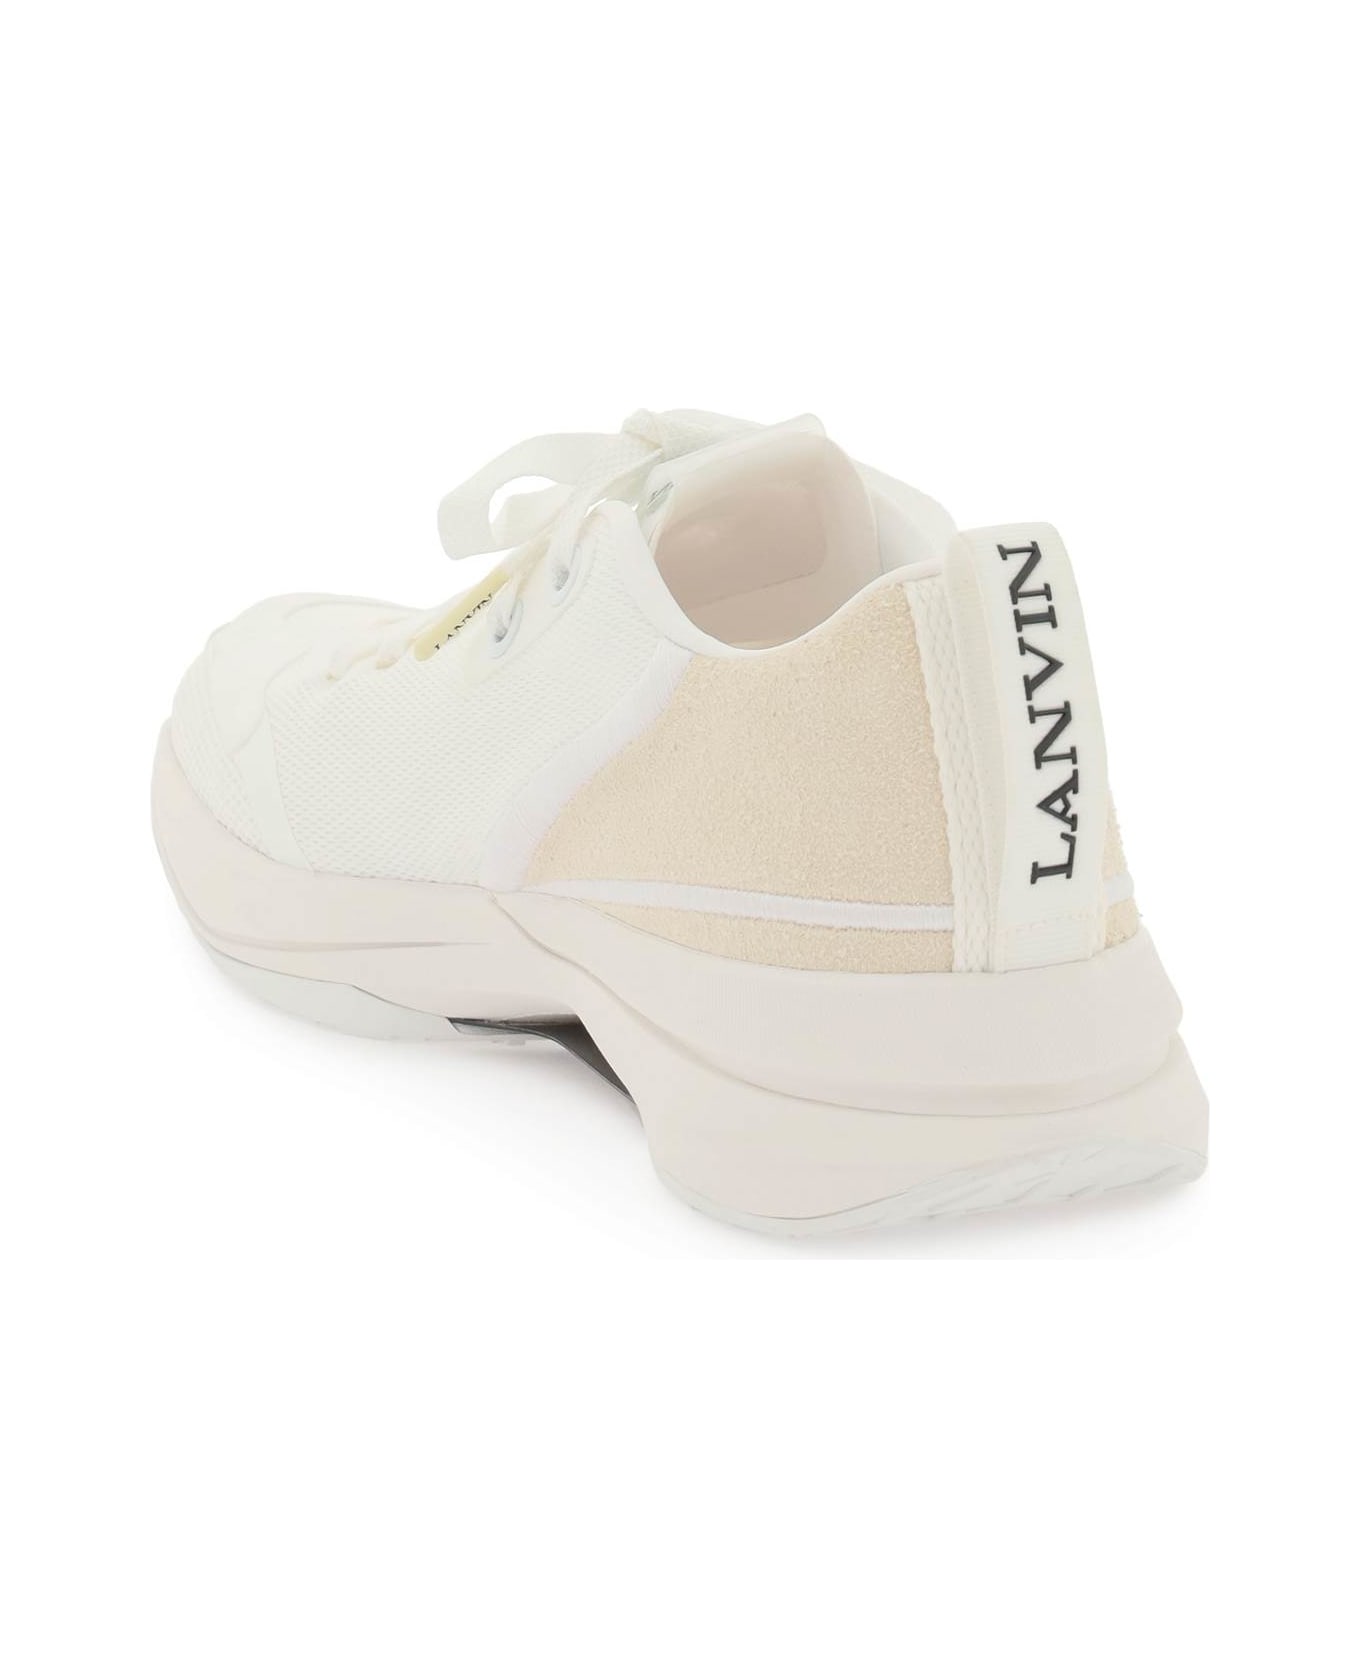 Lanvin Runner Sneakers - WHITE WHITE (White) スニーカー